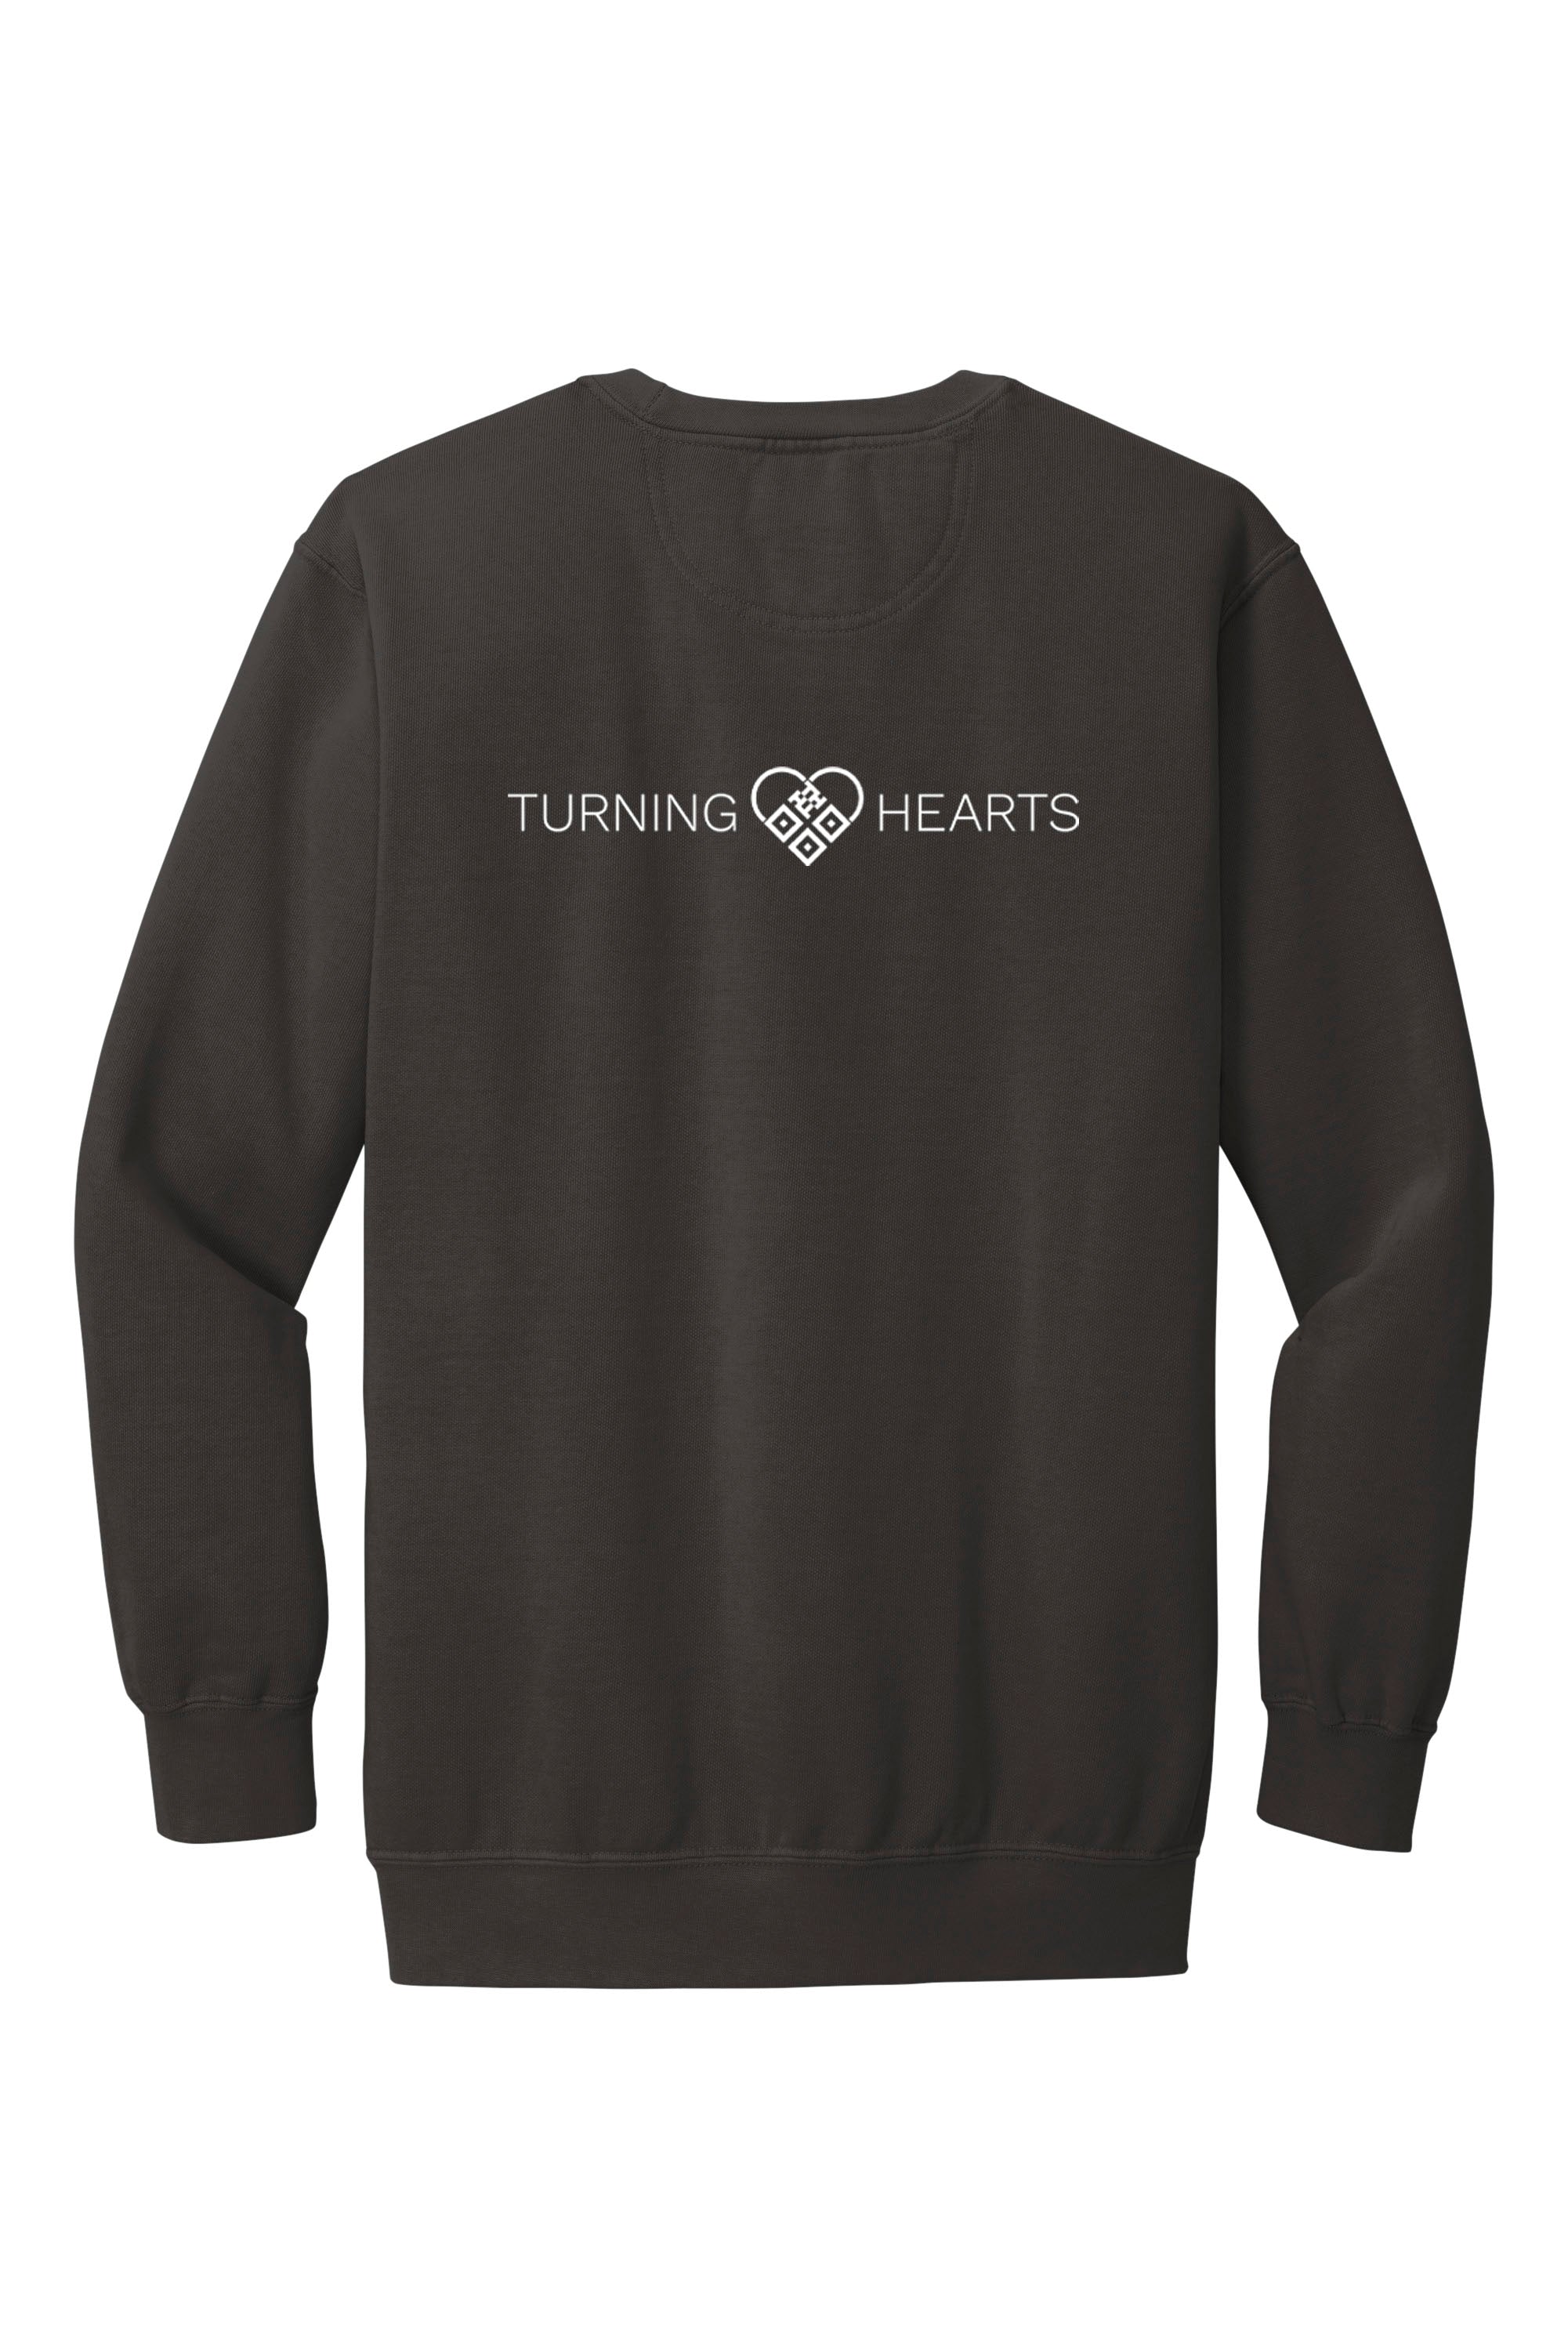 Turning Hearts (Heart Logo) Crewneck Sweatshirt